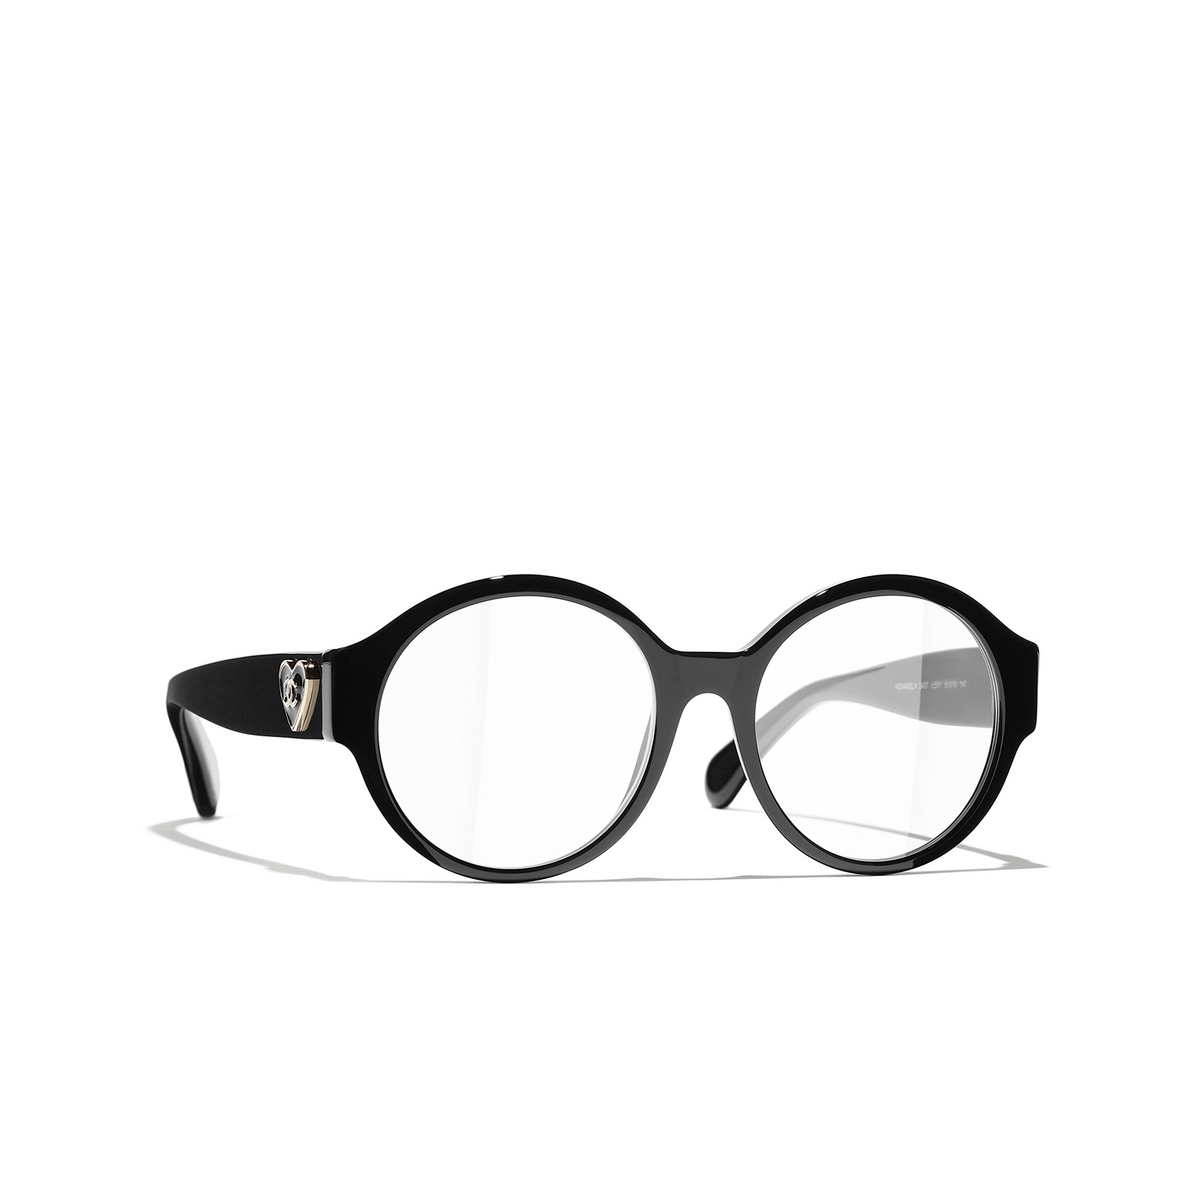 CHANEL round Eyeglasses C501 Black